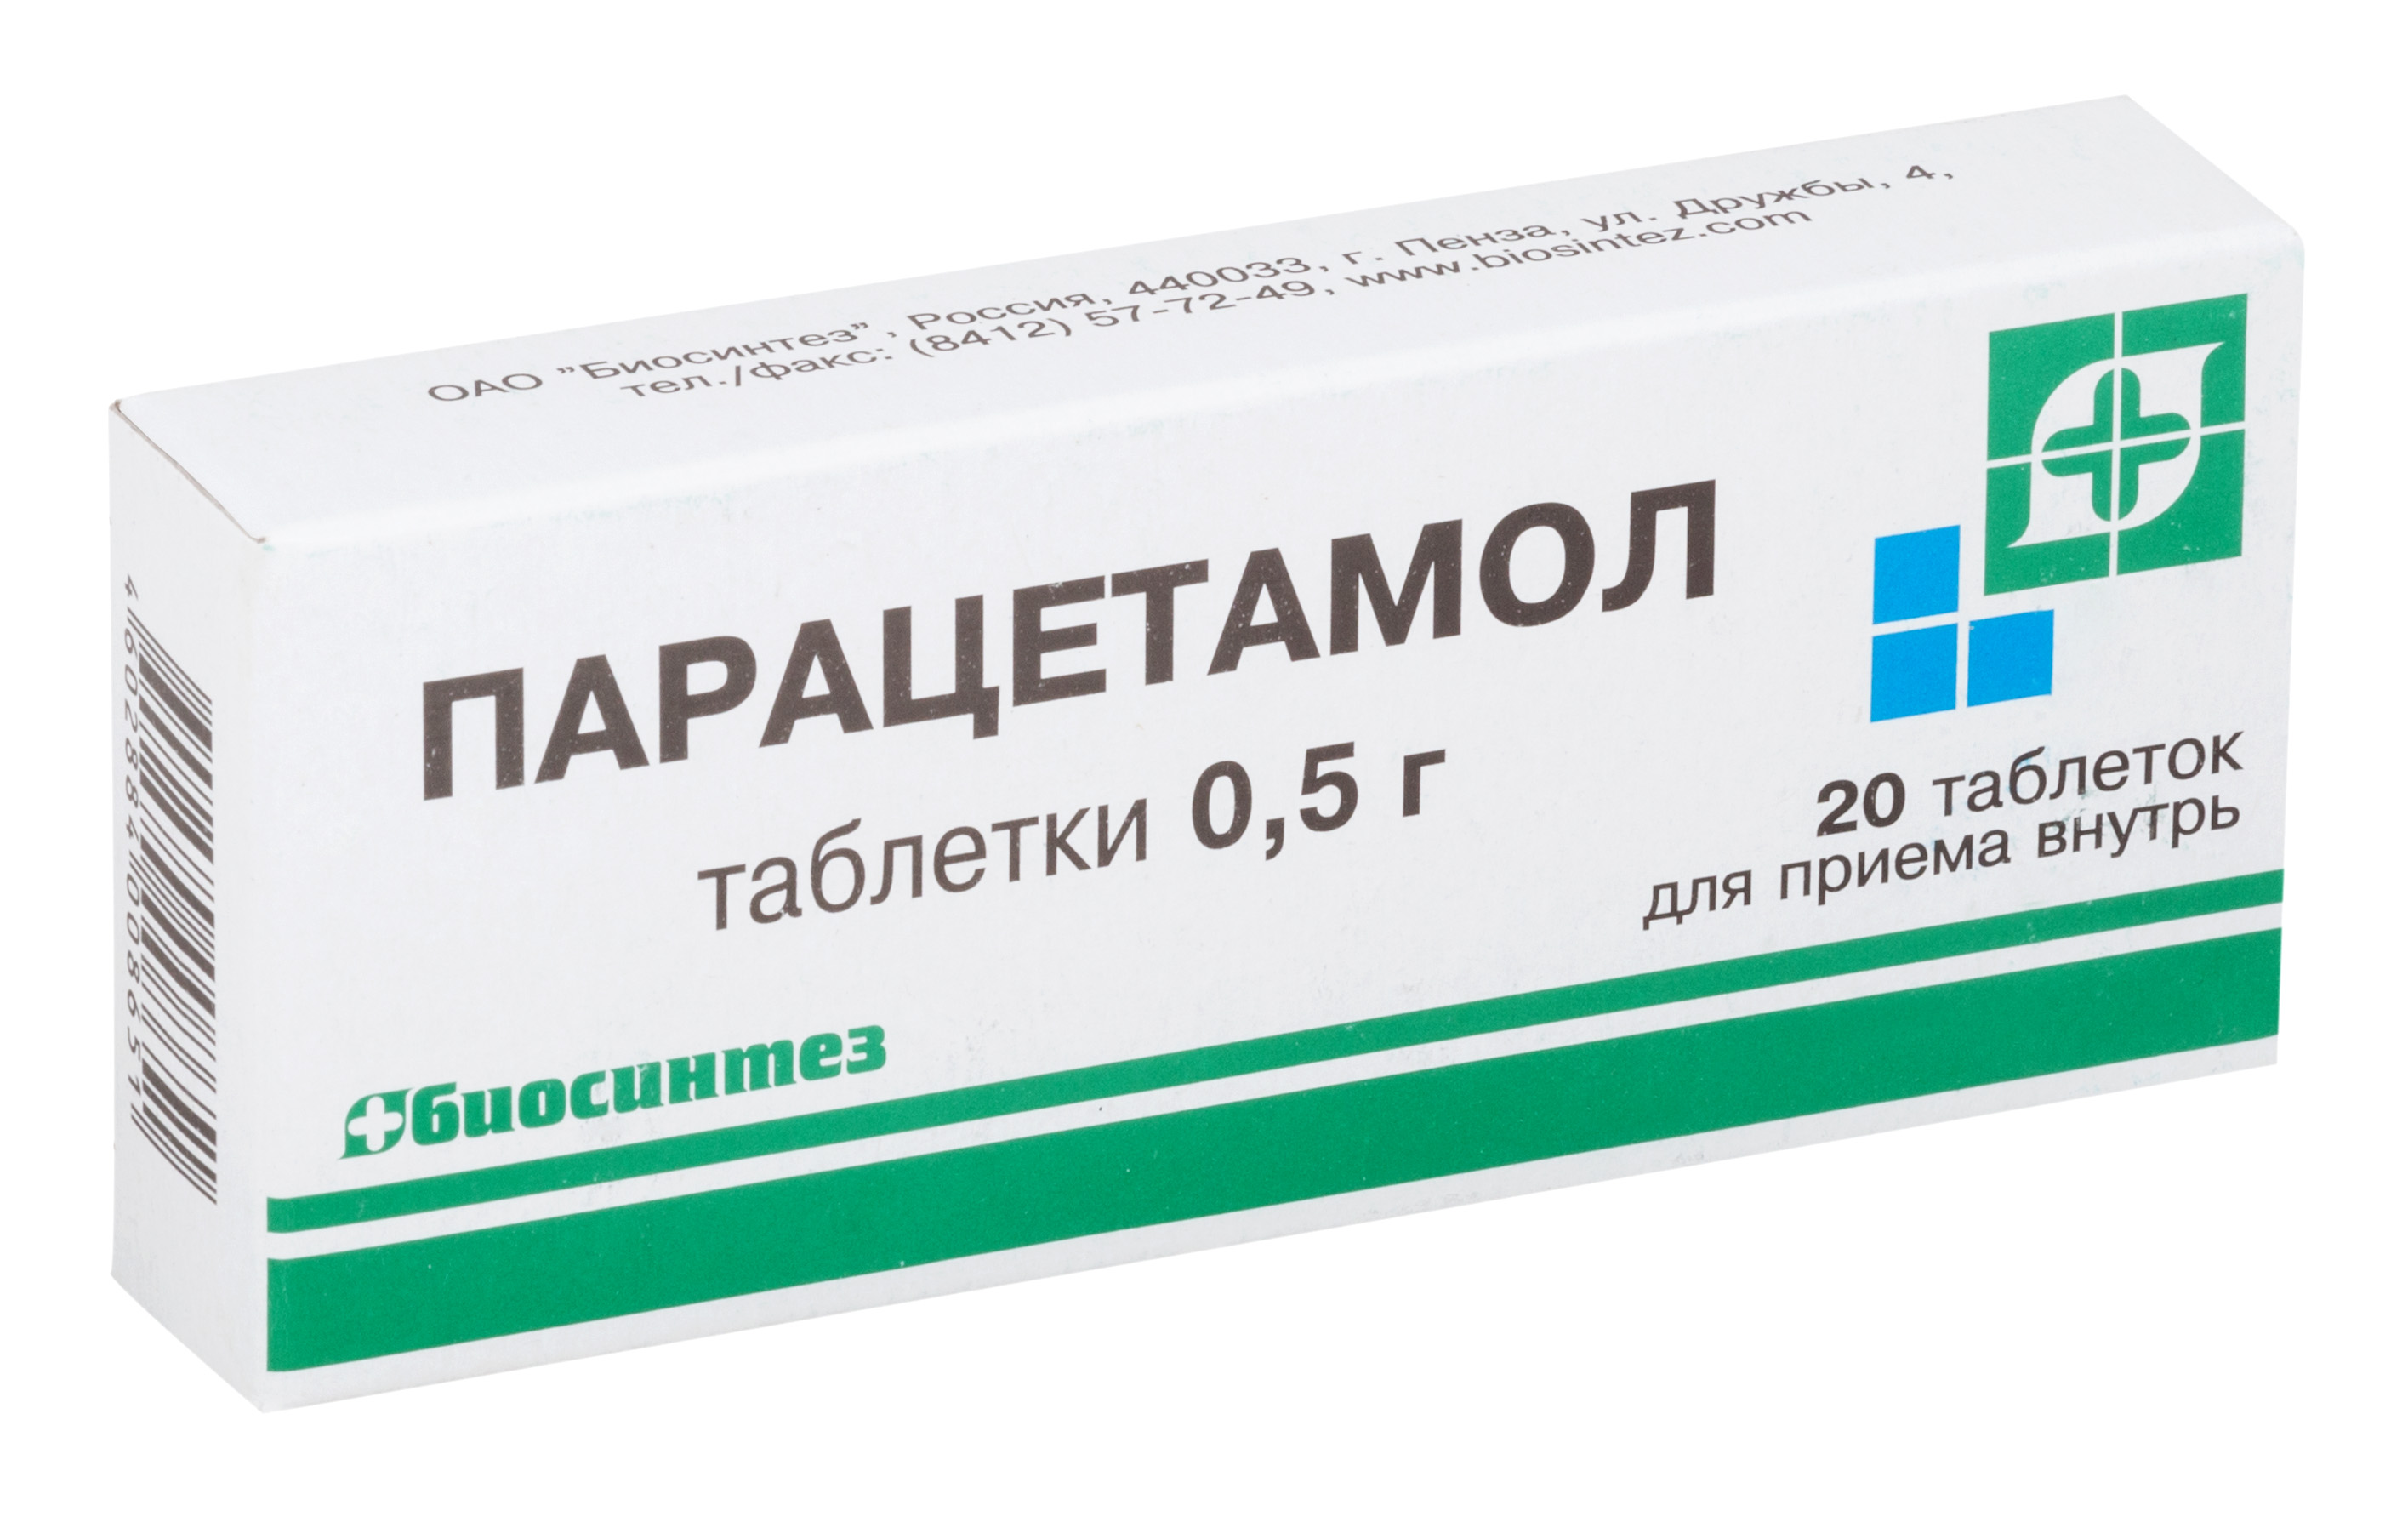 Парацетамол табл. 500 мг №20